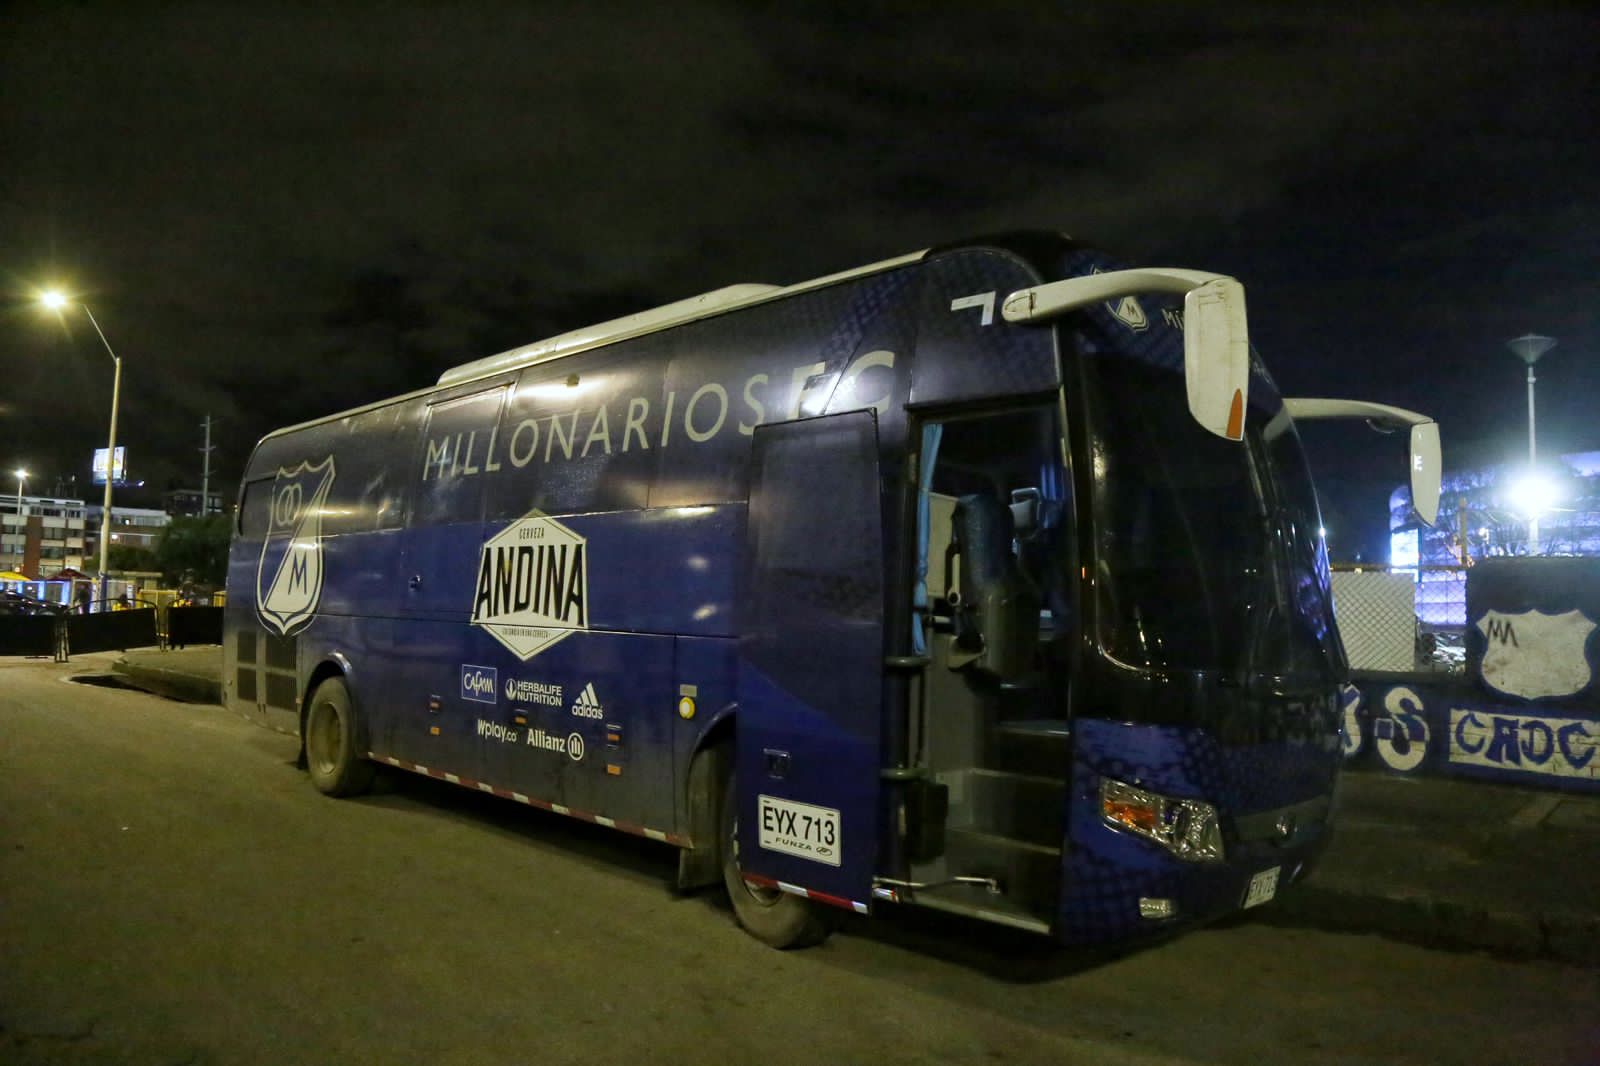 Atacan bus de Millos llegando a El Campín para el clásico Este miércoles 30 de noviembre, Millonarios se disputa un partido importante en el El Campín junto a Santa Fe, sin embargo, el bus que transporta a los jugadores del albiazul fue atacado.